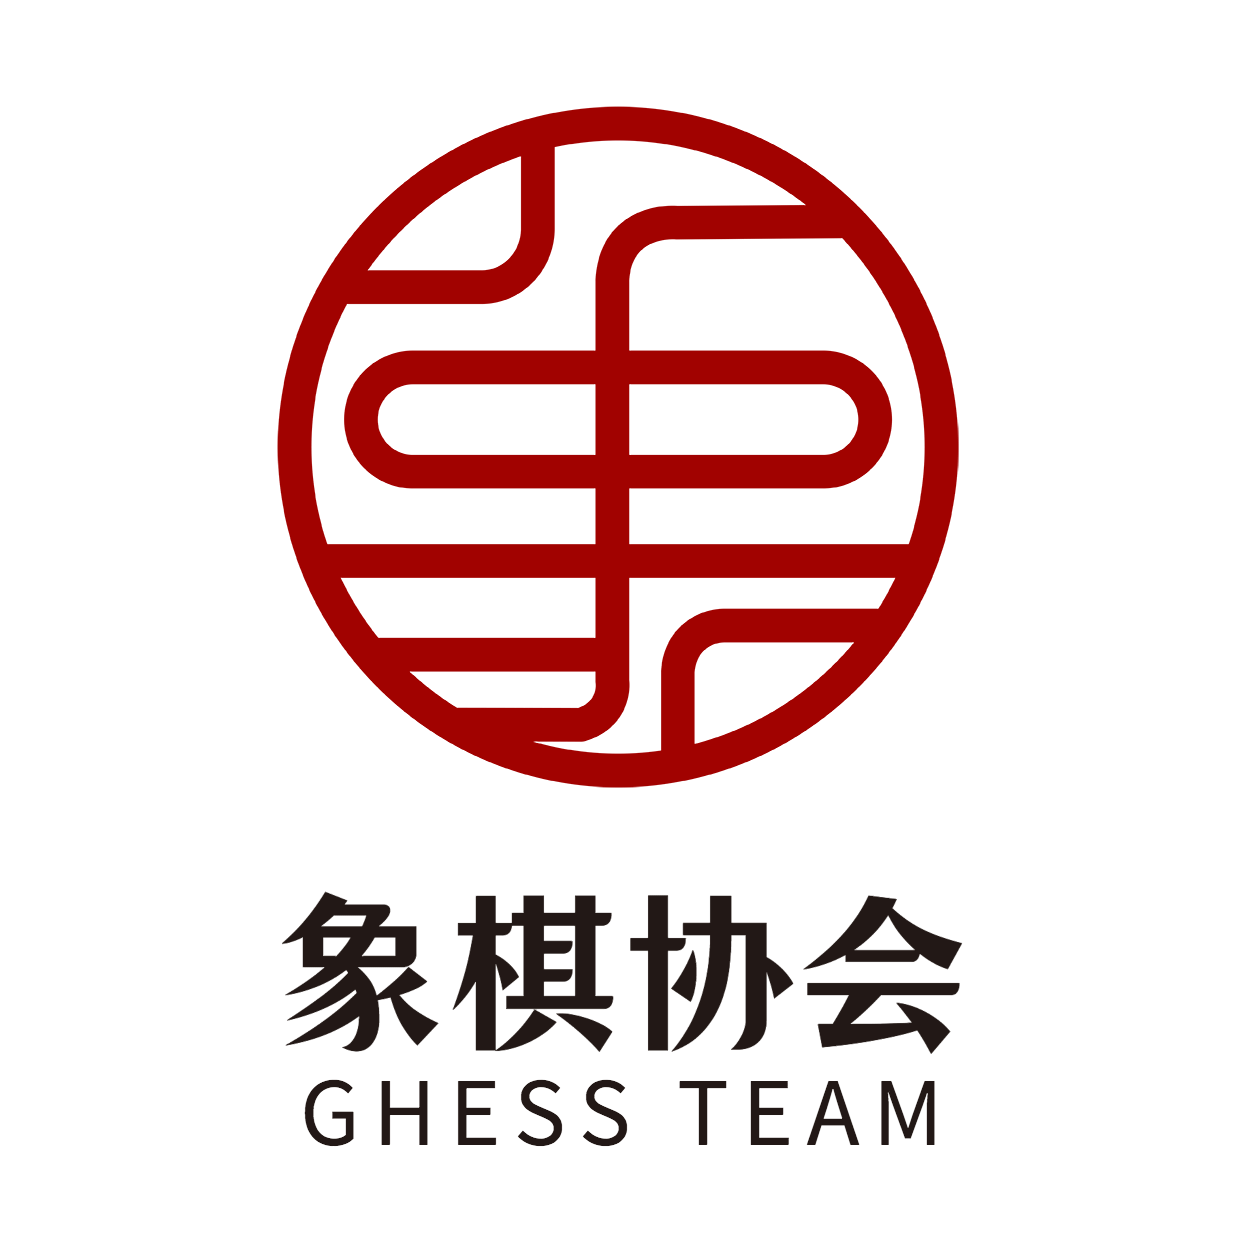 象棋协教育培训手绘头像logo预览效果